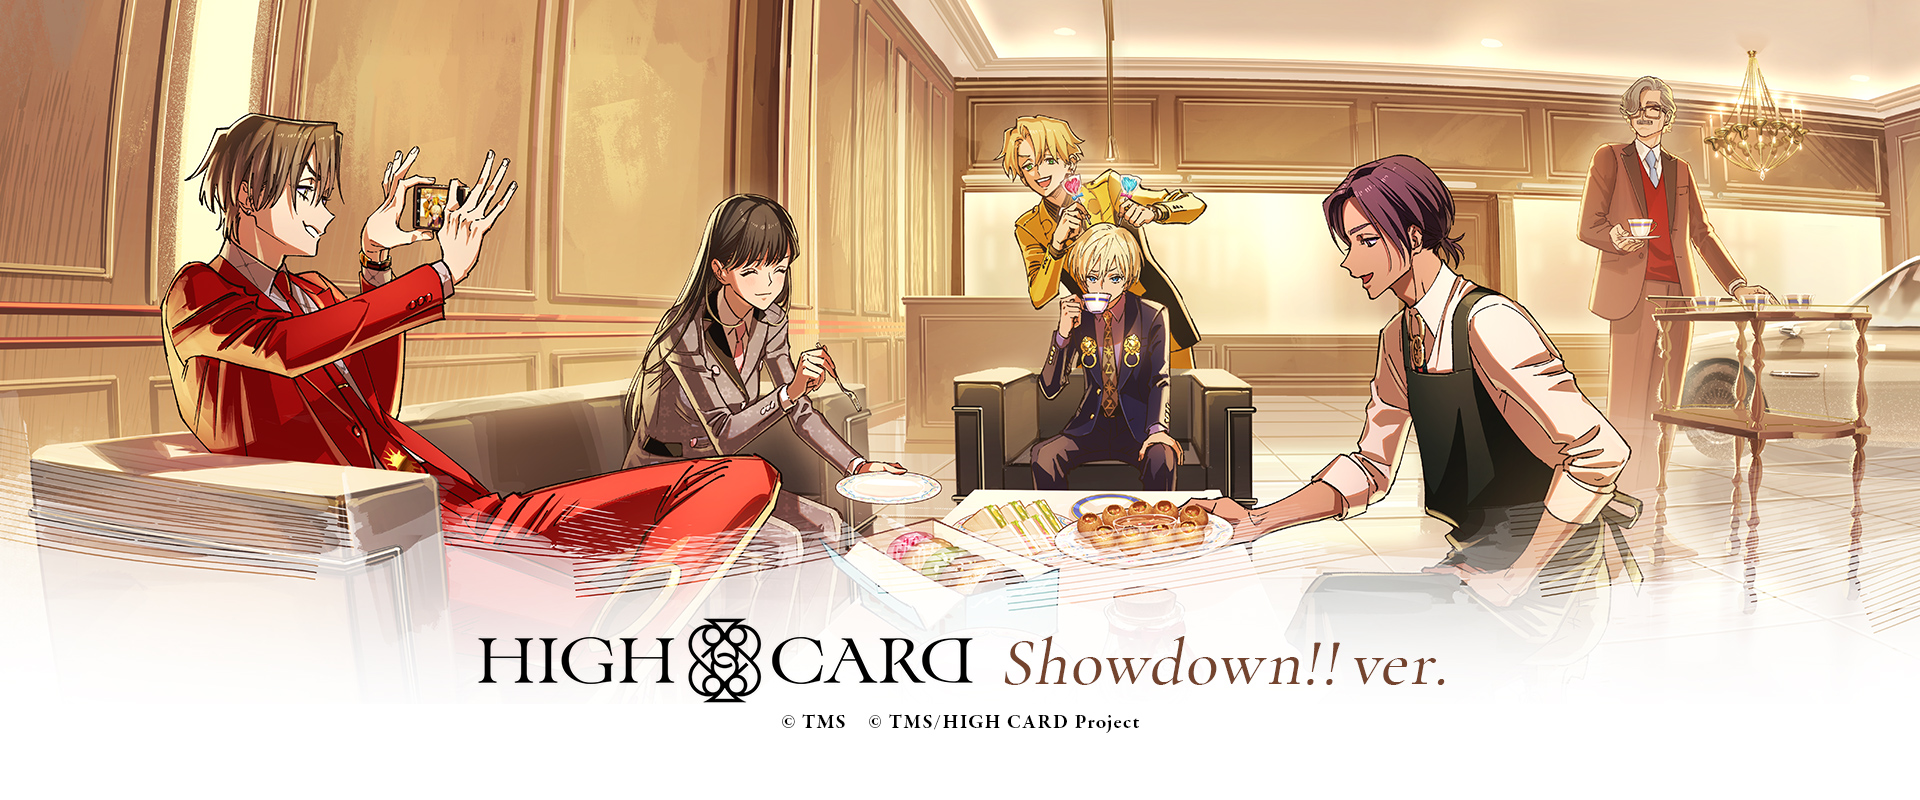 HIGH CARD Showdown!!ver.